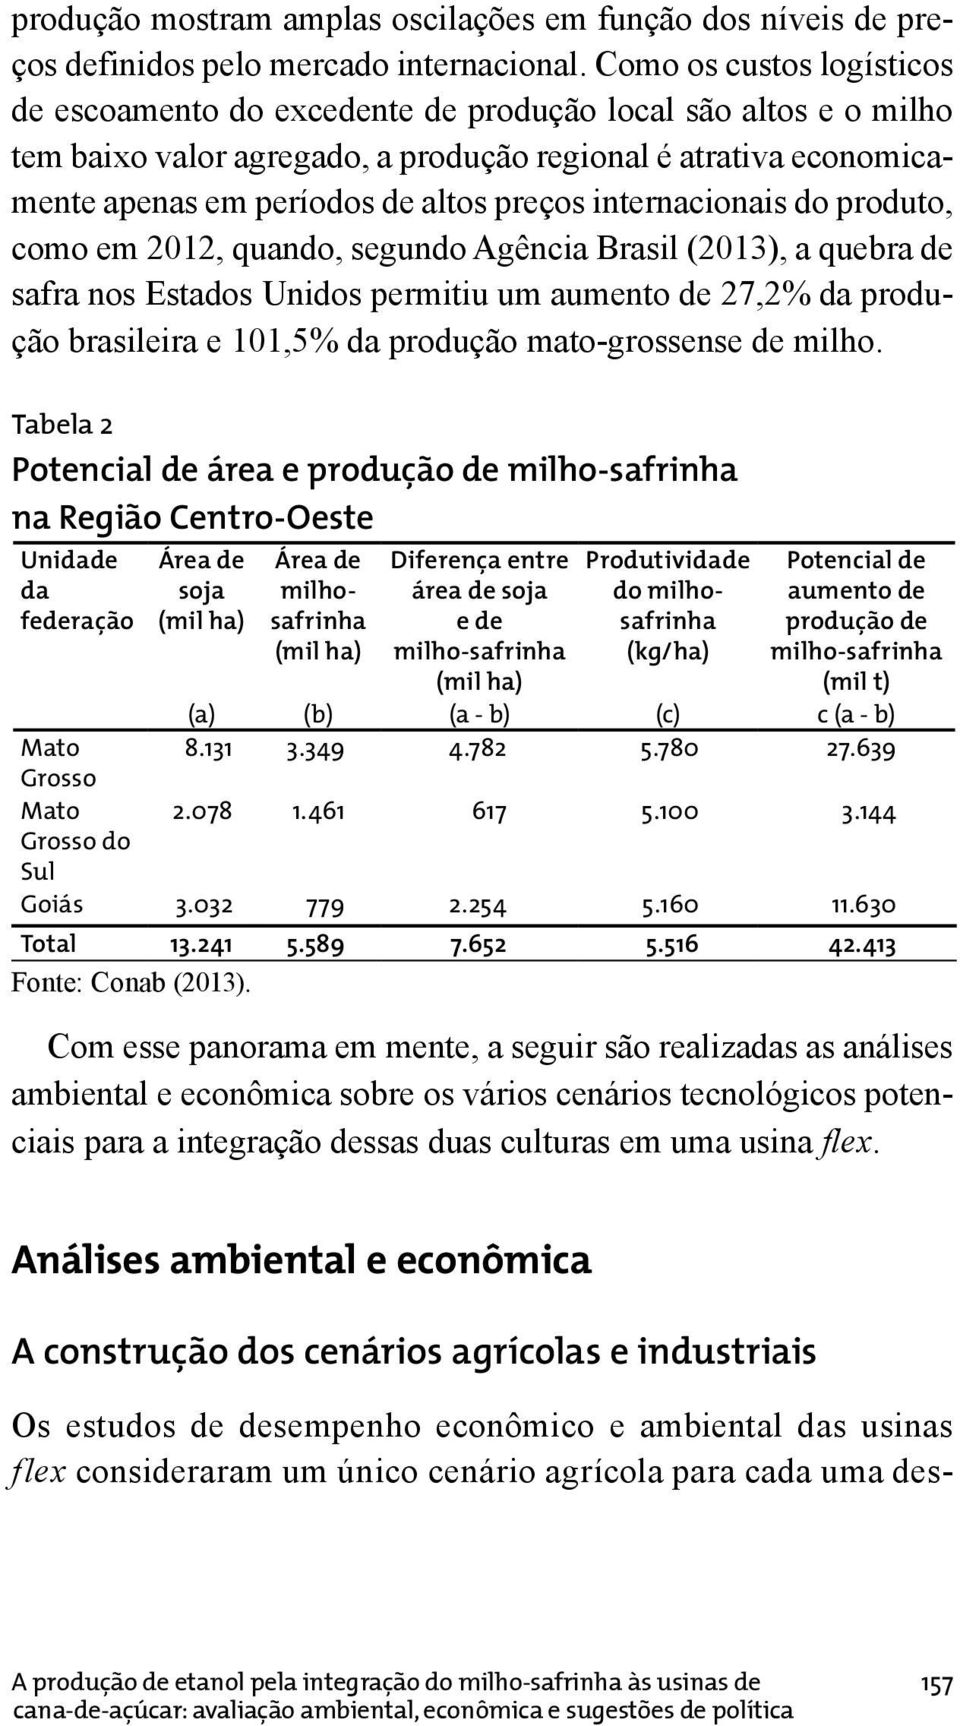 internacionais do produto, como em 2012, quando, segundo Agência Brasil (2013), a quebra de safra nos Estados Unidos permitiu um aumento de 27,2% da produção brasileira e 101,5% da produção